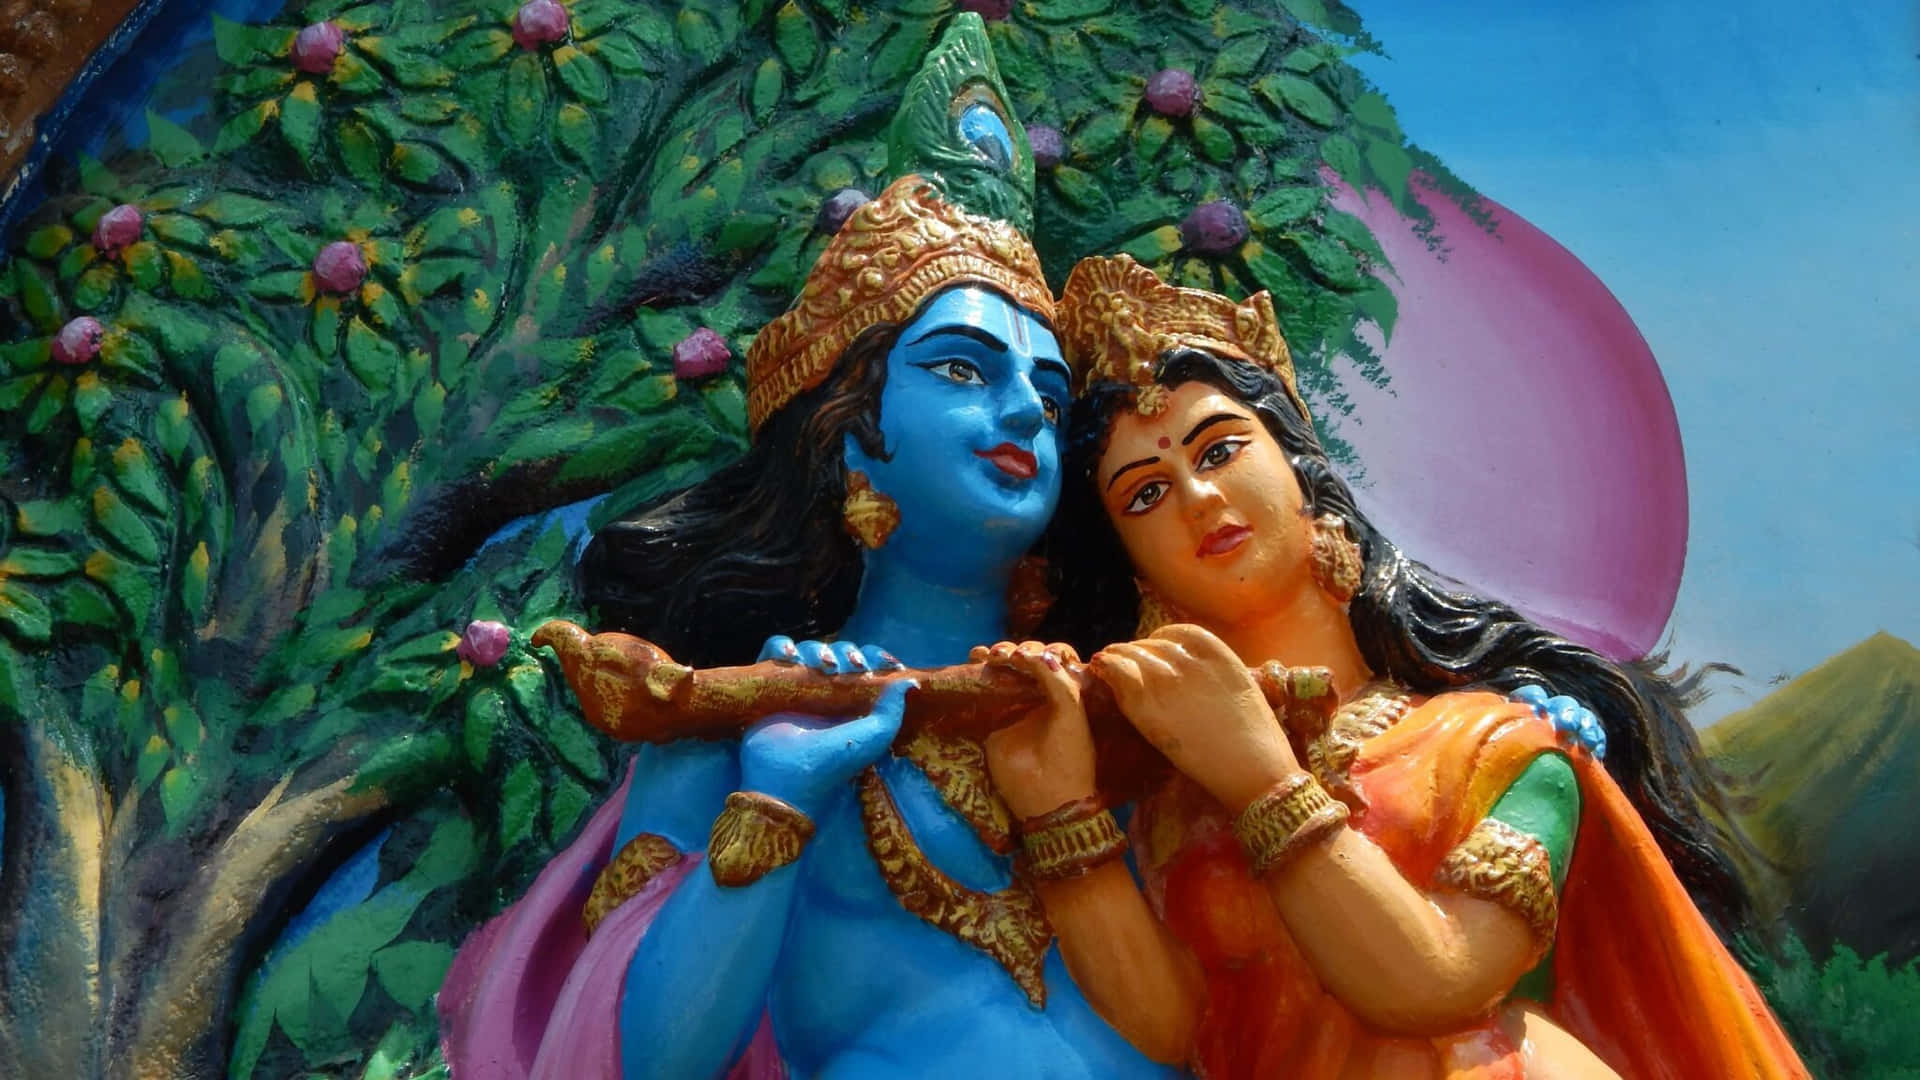 Immaginedel Dipinto Di Un'albero Con La Statua Di Krishna E Radha.